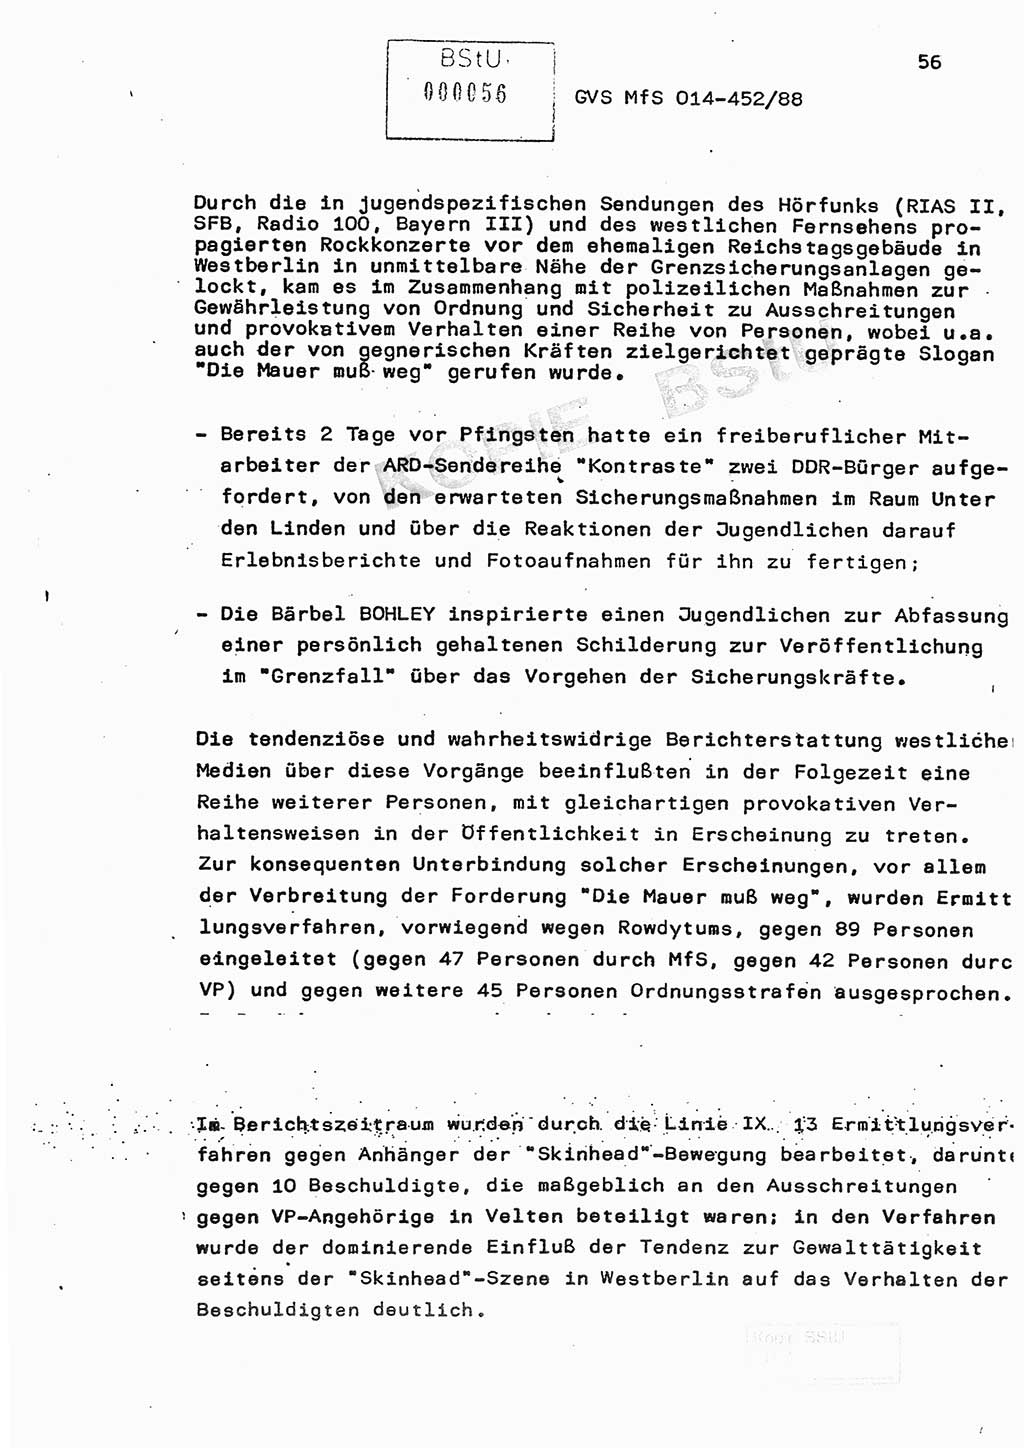 Jahresbericht der Hauptabteilung (HA) Ⅸ 1987, Einschätzung der Wirksamkeit der Untersuchungsarbeit im Jahre 1987, Ministerium für Staatssicherheit (MfS) der Deutschen Demokratischen Republik (DDR), Hauptabteilung Ⅸ, Geheime Verschlußsache (GVS) o014-452/88, Berlin 1988, Seite 56 (Einsch. MfS DDR HA Ⅸ GVS o014-452/88 1987, S. 56)